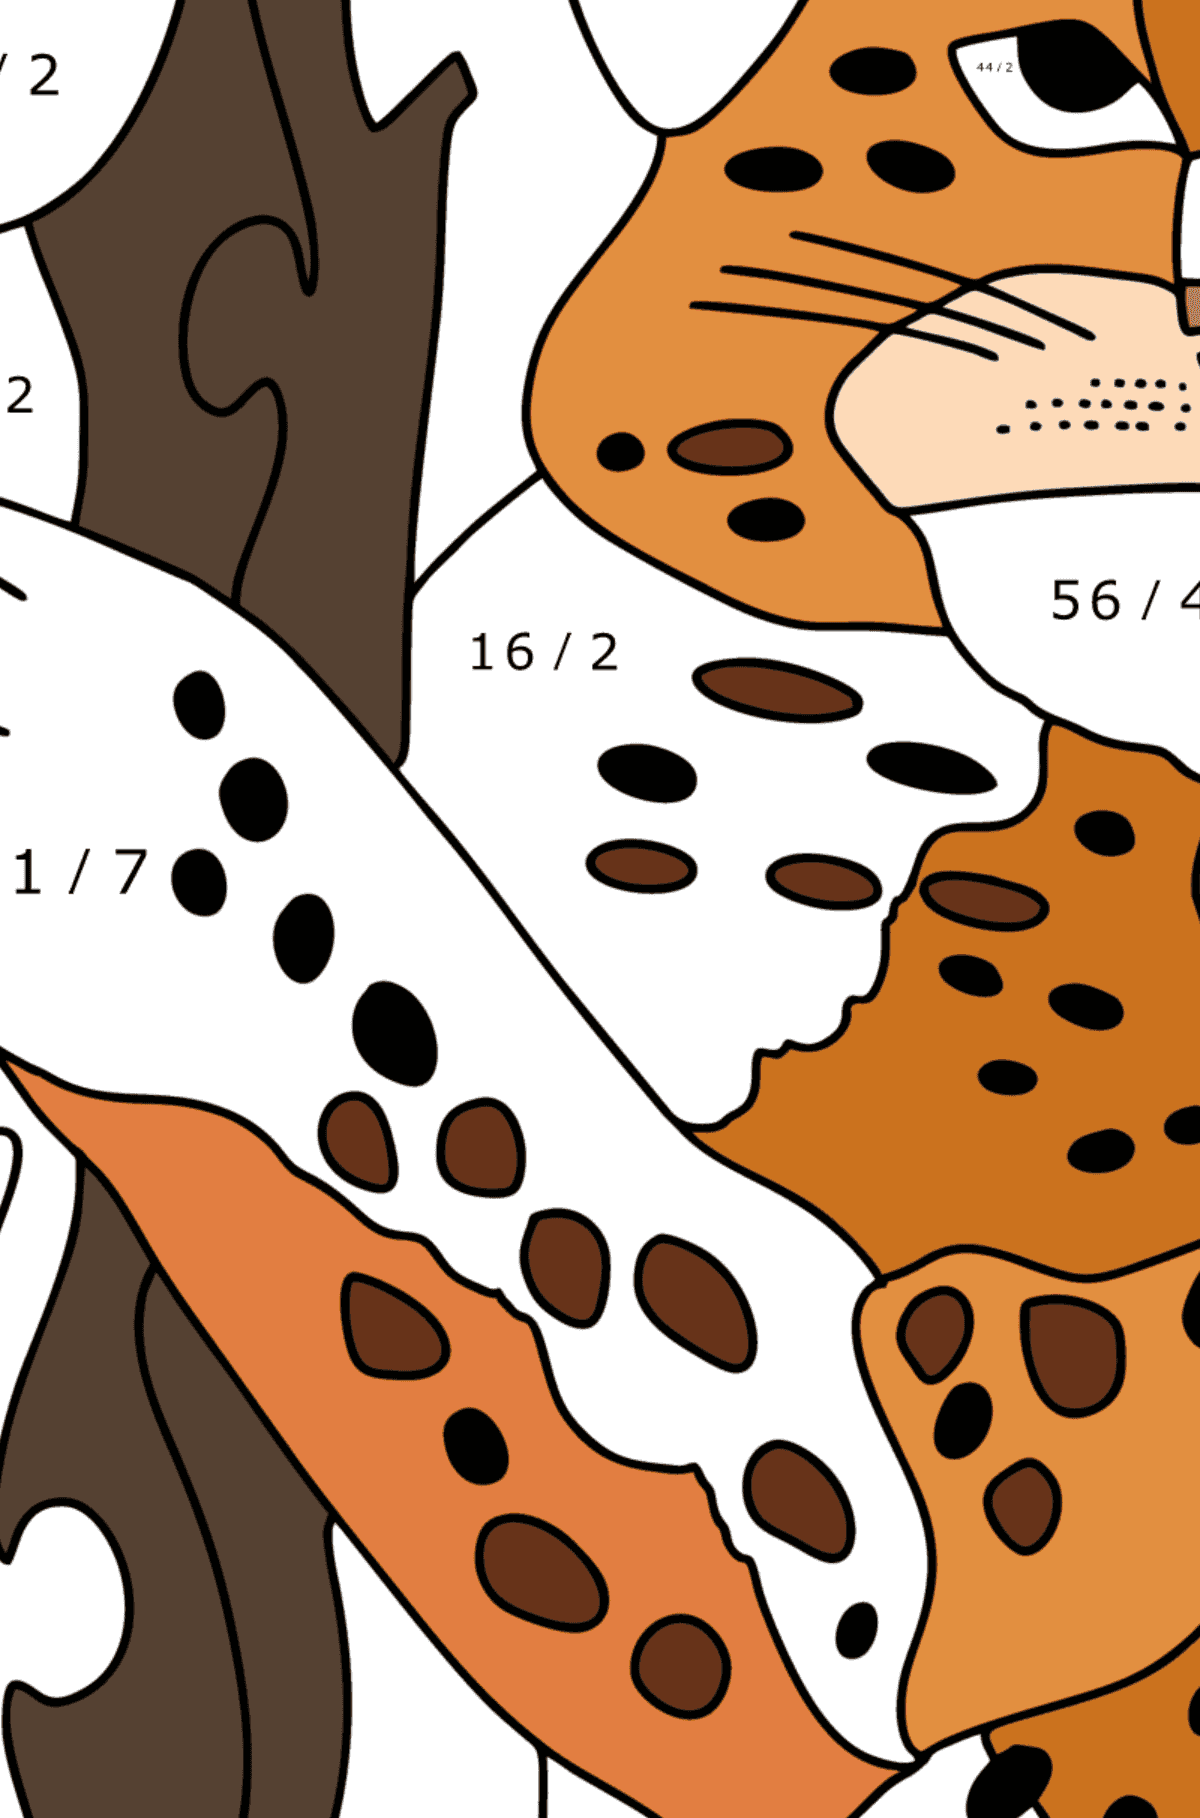 Jaguar-Dschungel ausmalbild - Mathe Ausmalbilder - Division für Kinder